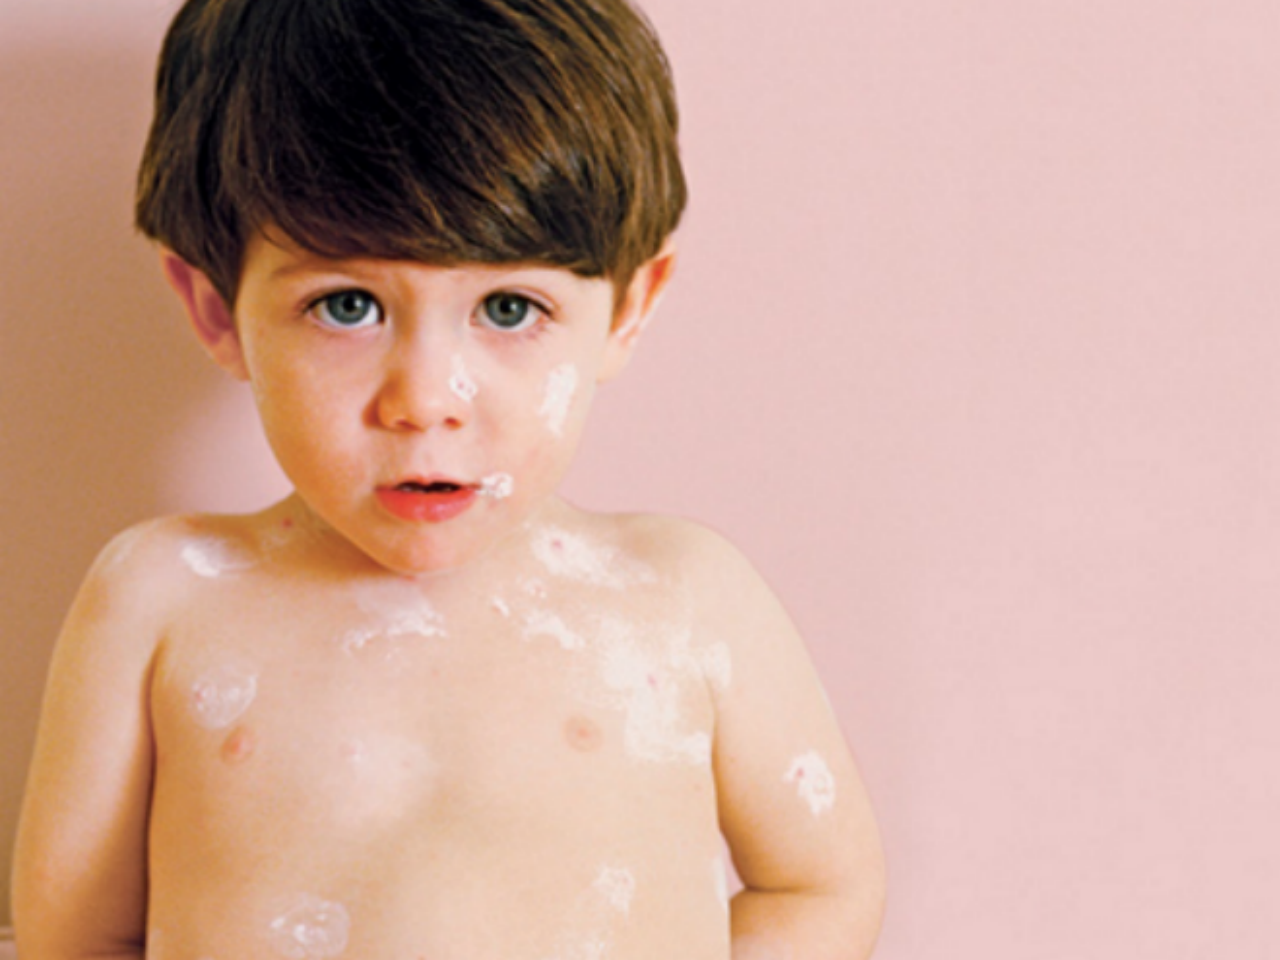 نقص صبغة الجلد عند الأطفال